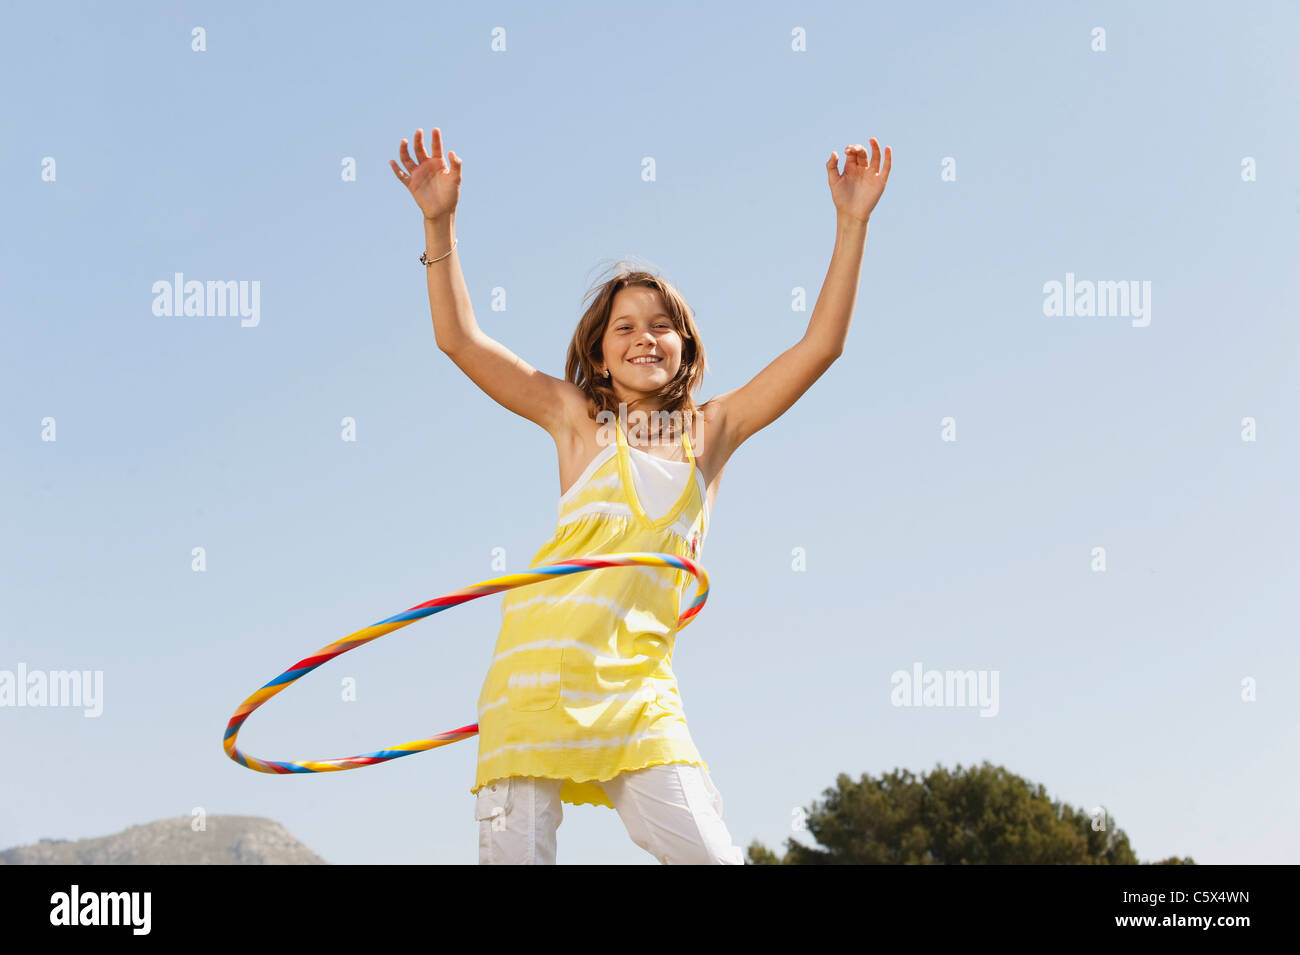 Hula hop immagini e fotografie stock ad alta risoluzione - Alamy